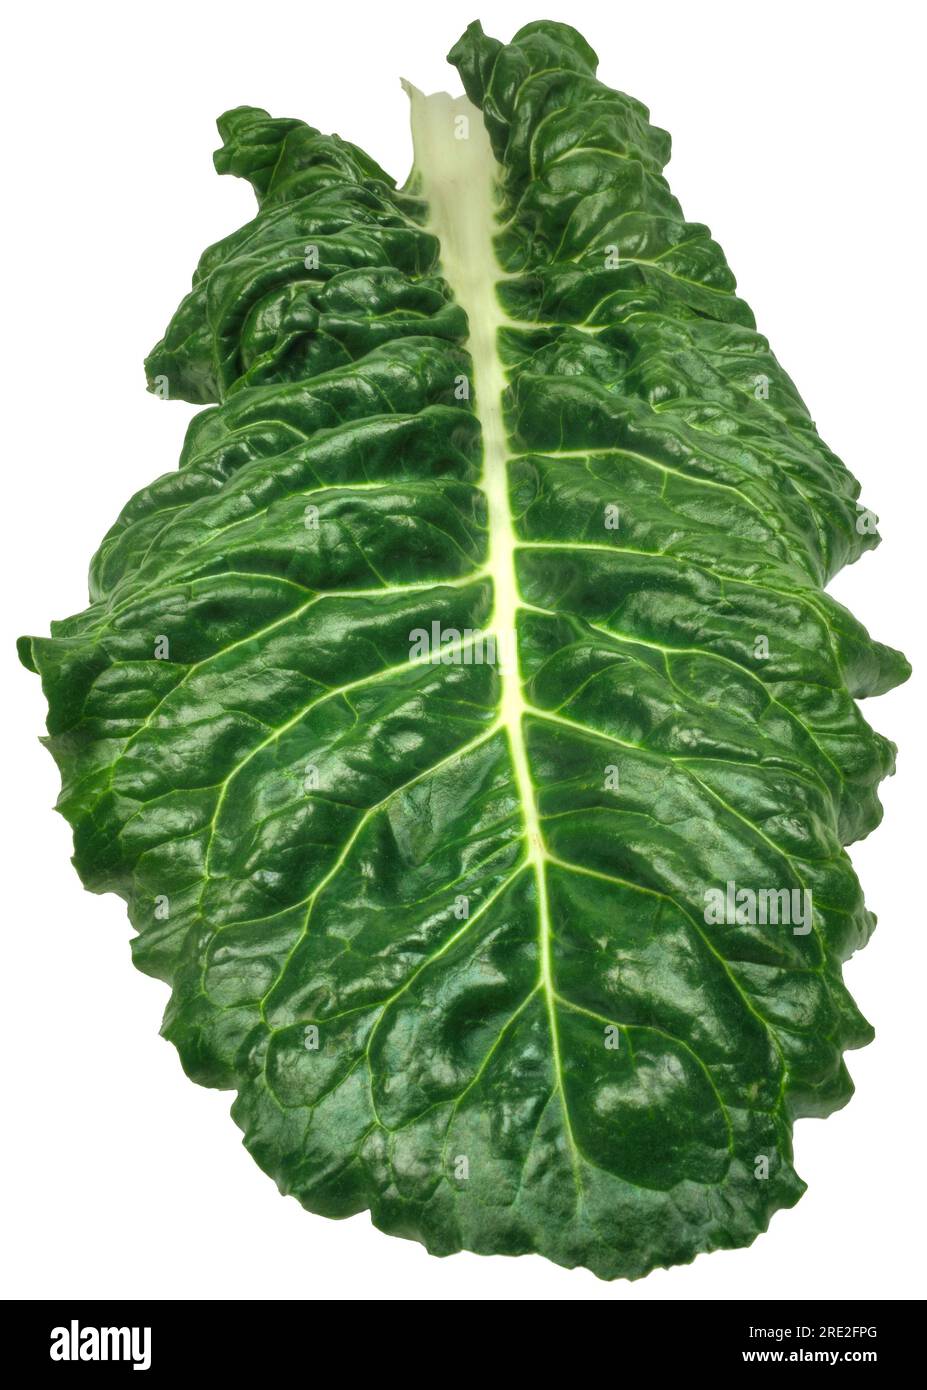 Bette suisse (Beta vulgaris) feuilles de légumes verts feuillus sur fond blanc. Banque D'Images